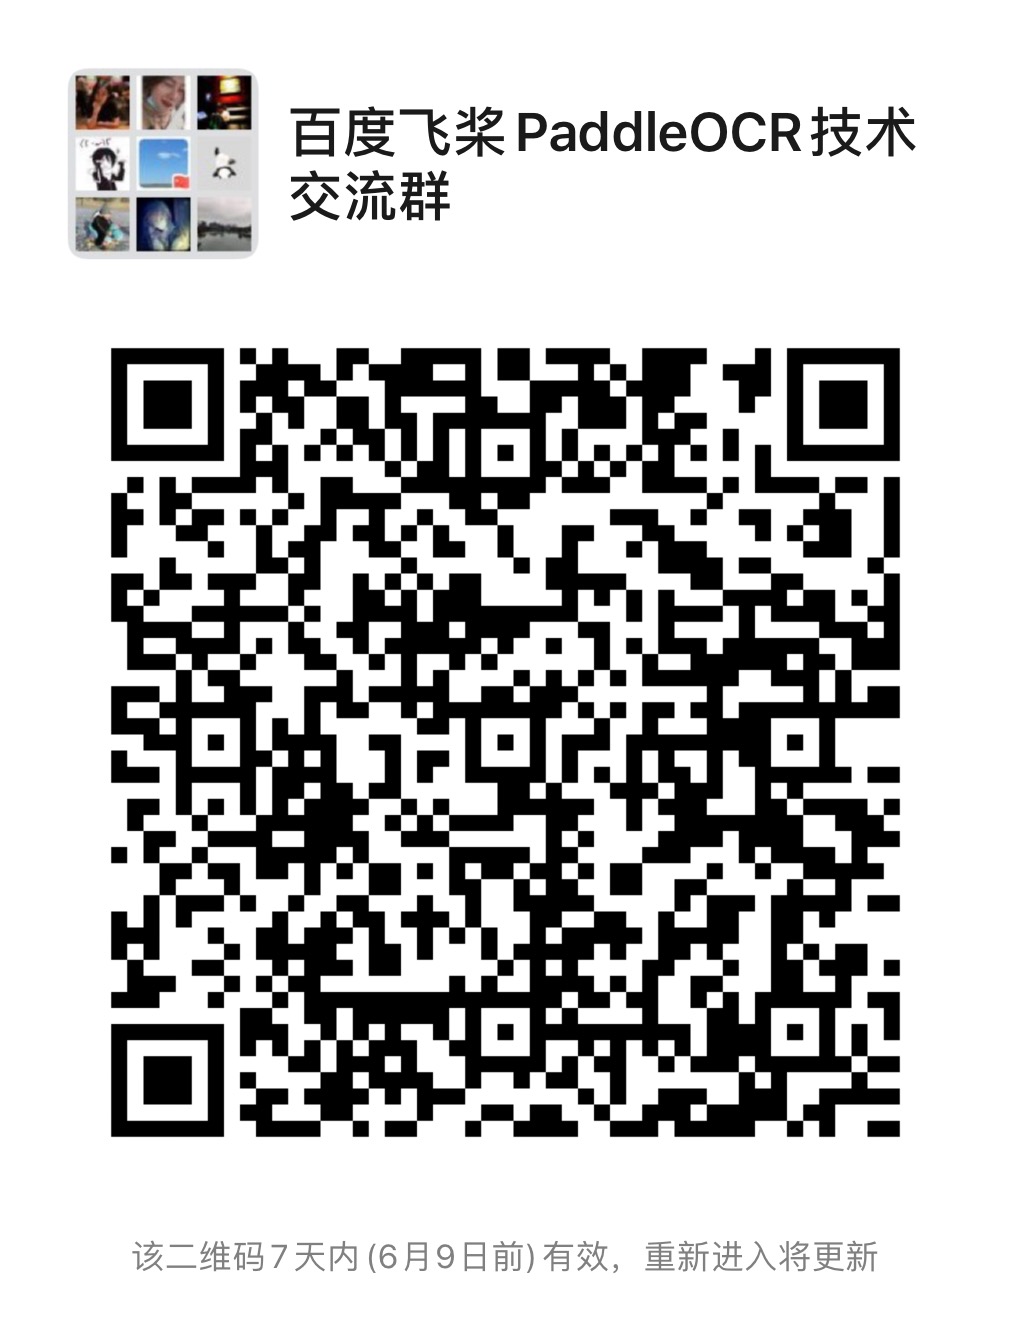 doc/WeChat.jpeg